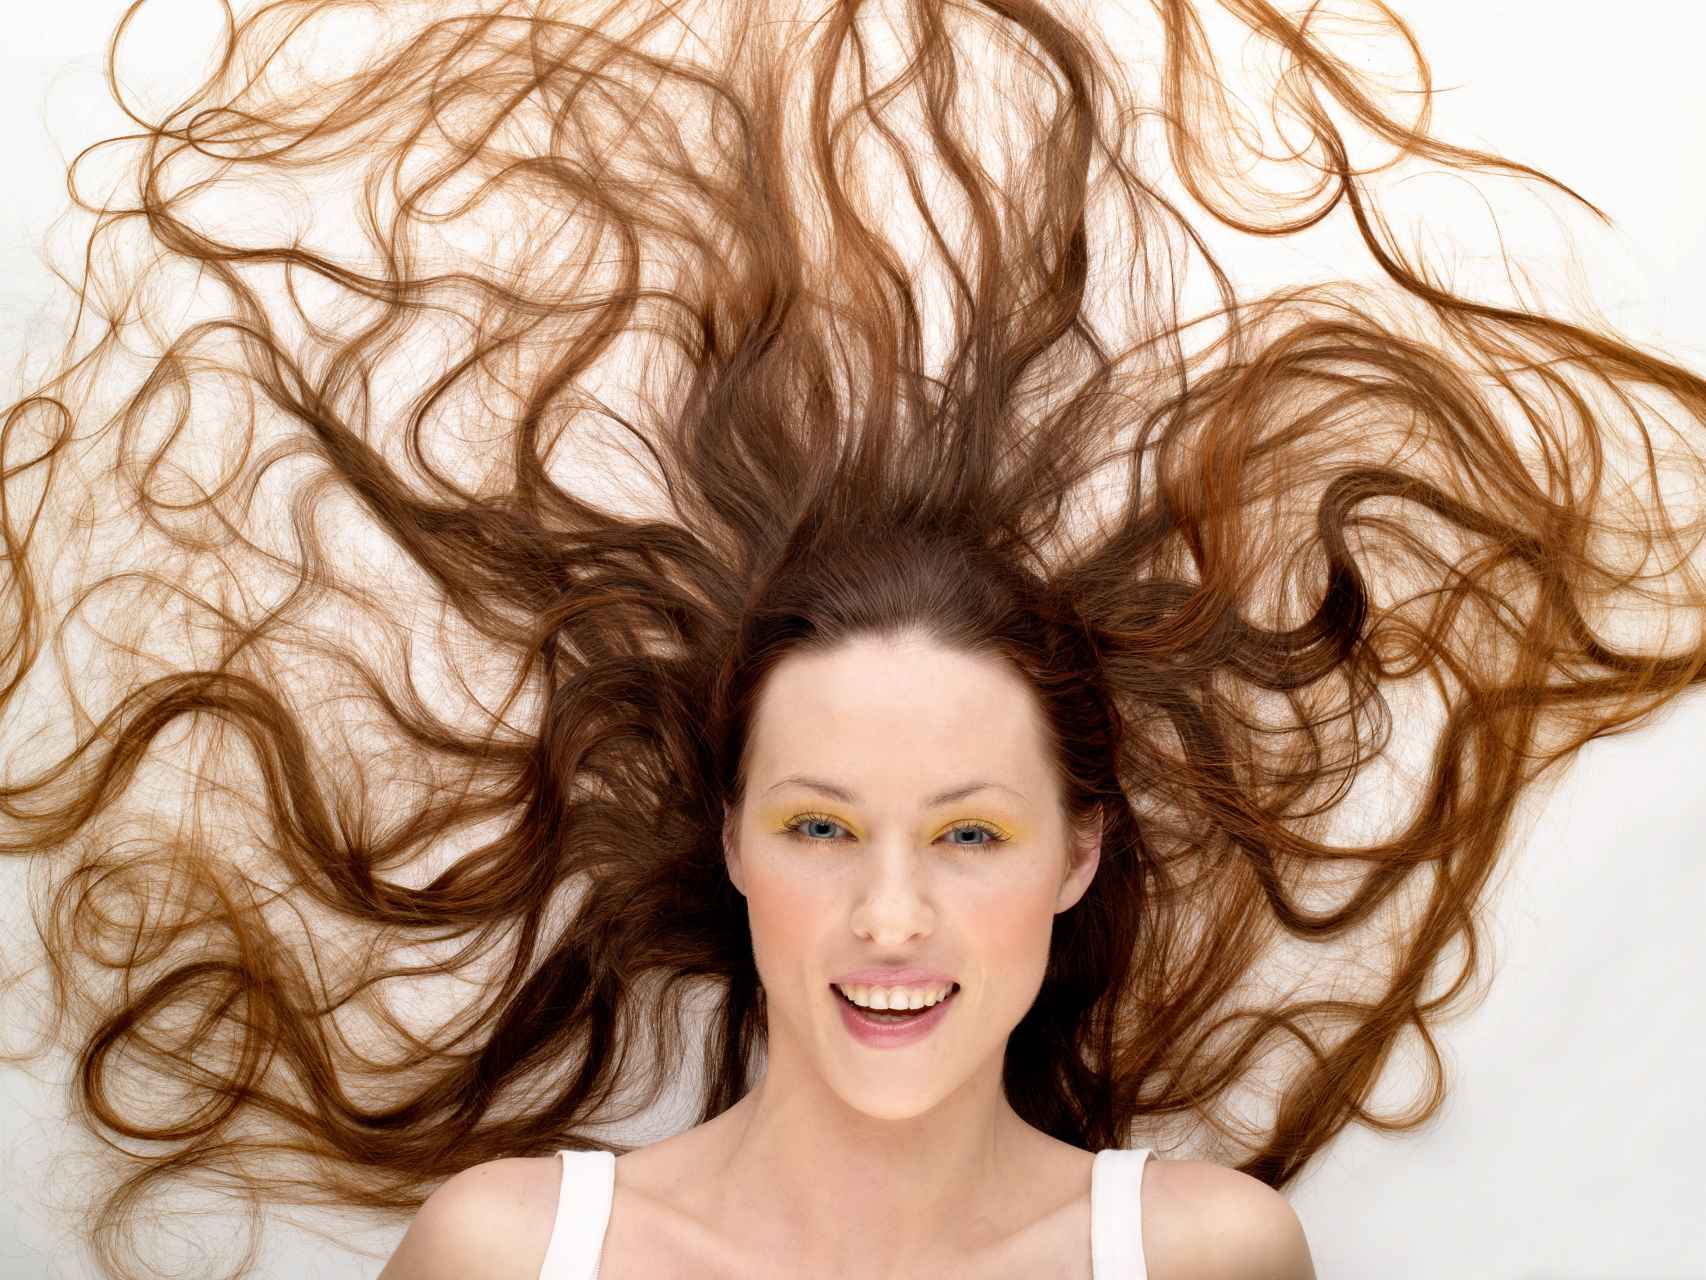 Estos días el cabello se encuentra más limpio porque está expuesto a menos agentes contaminantes.